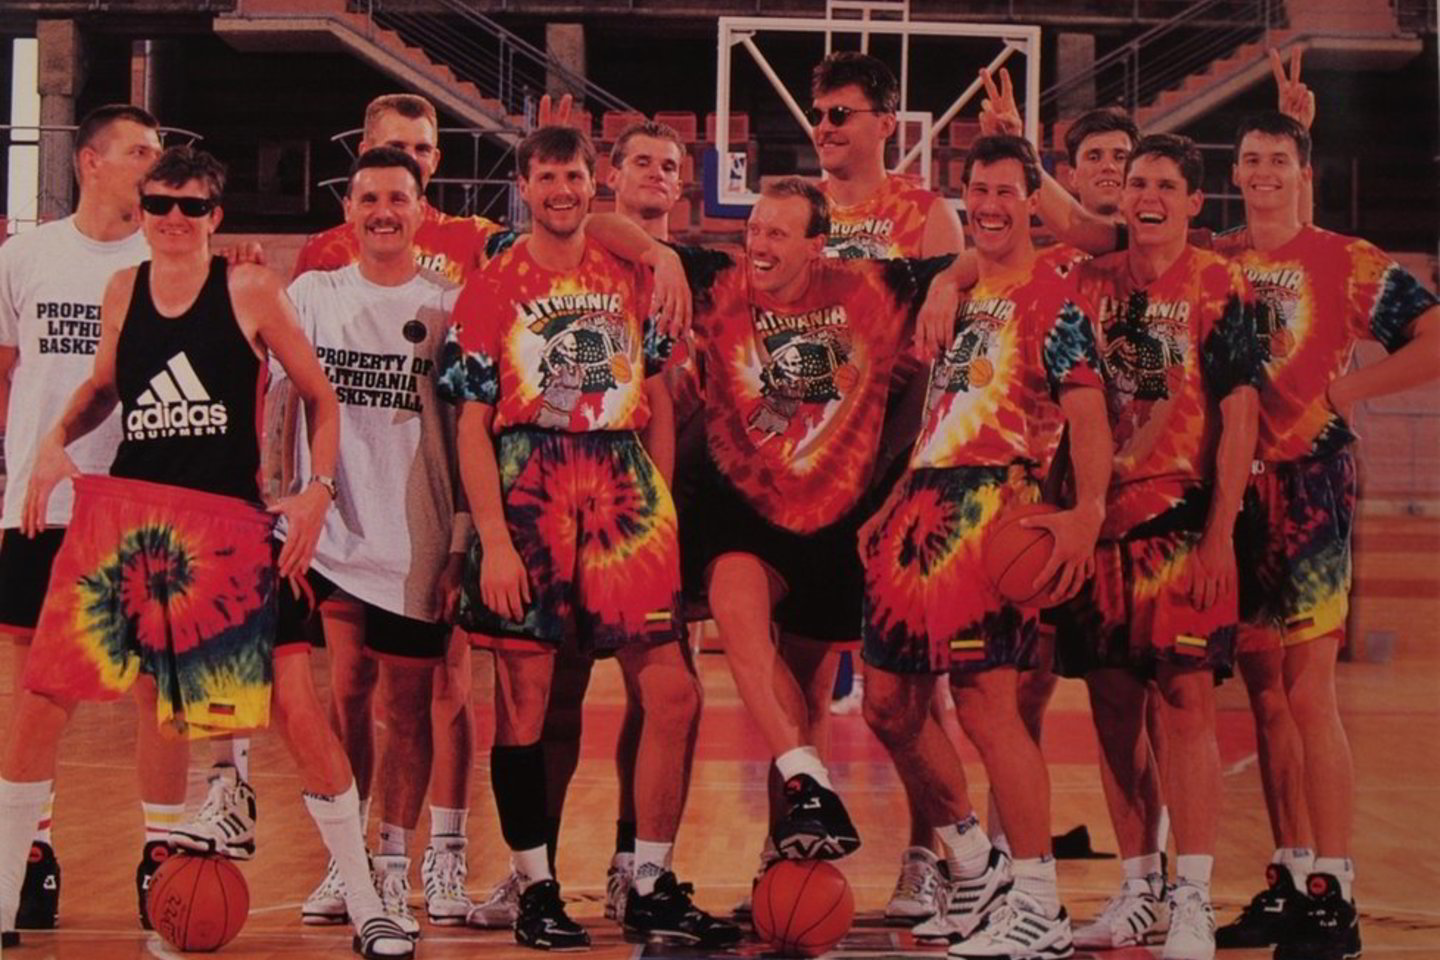  1992 metų Barselonos žaidynių bronzą iškovojusi Lietuvos rinktinė, dar vadinama „Kita svajonių komanda“.